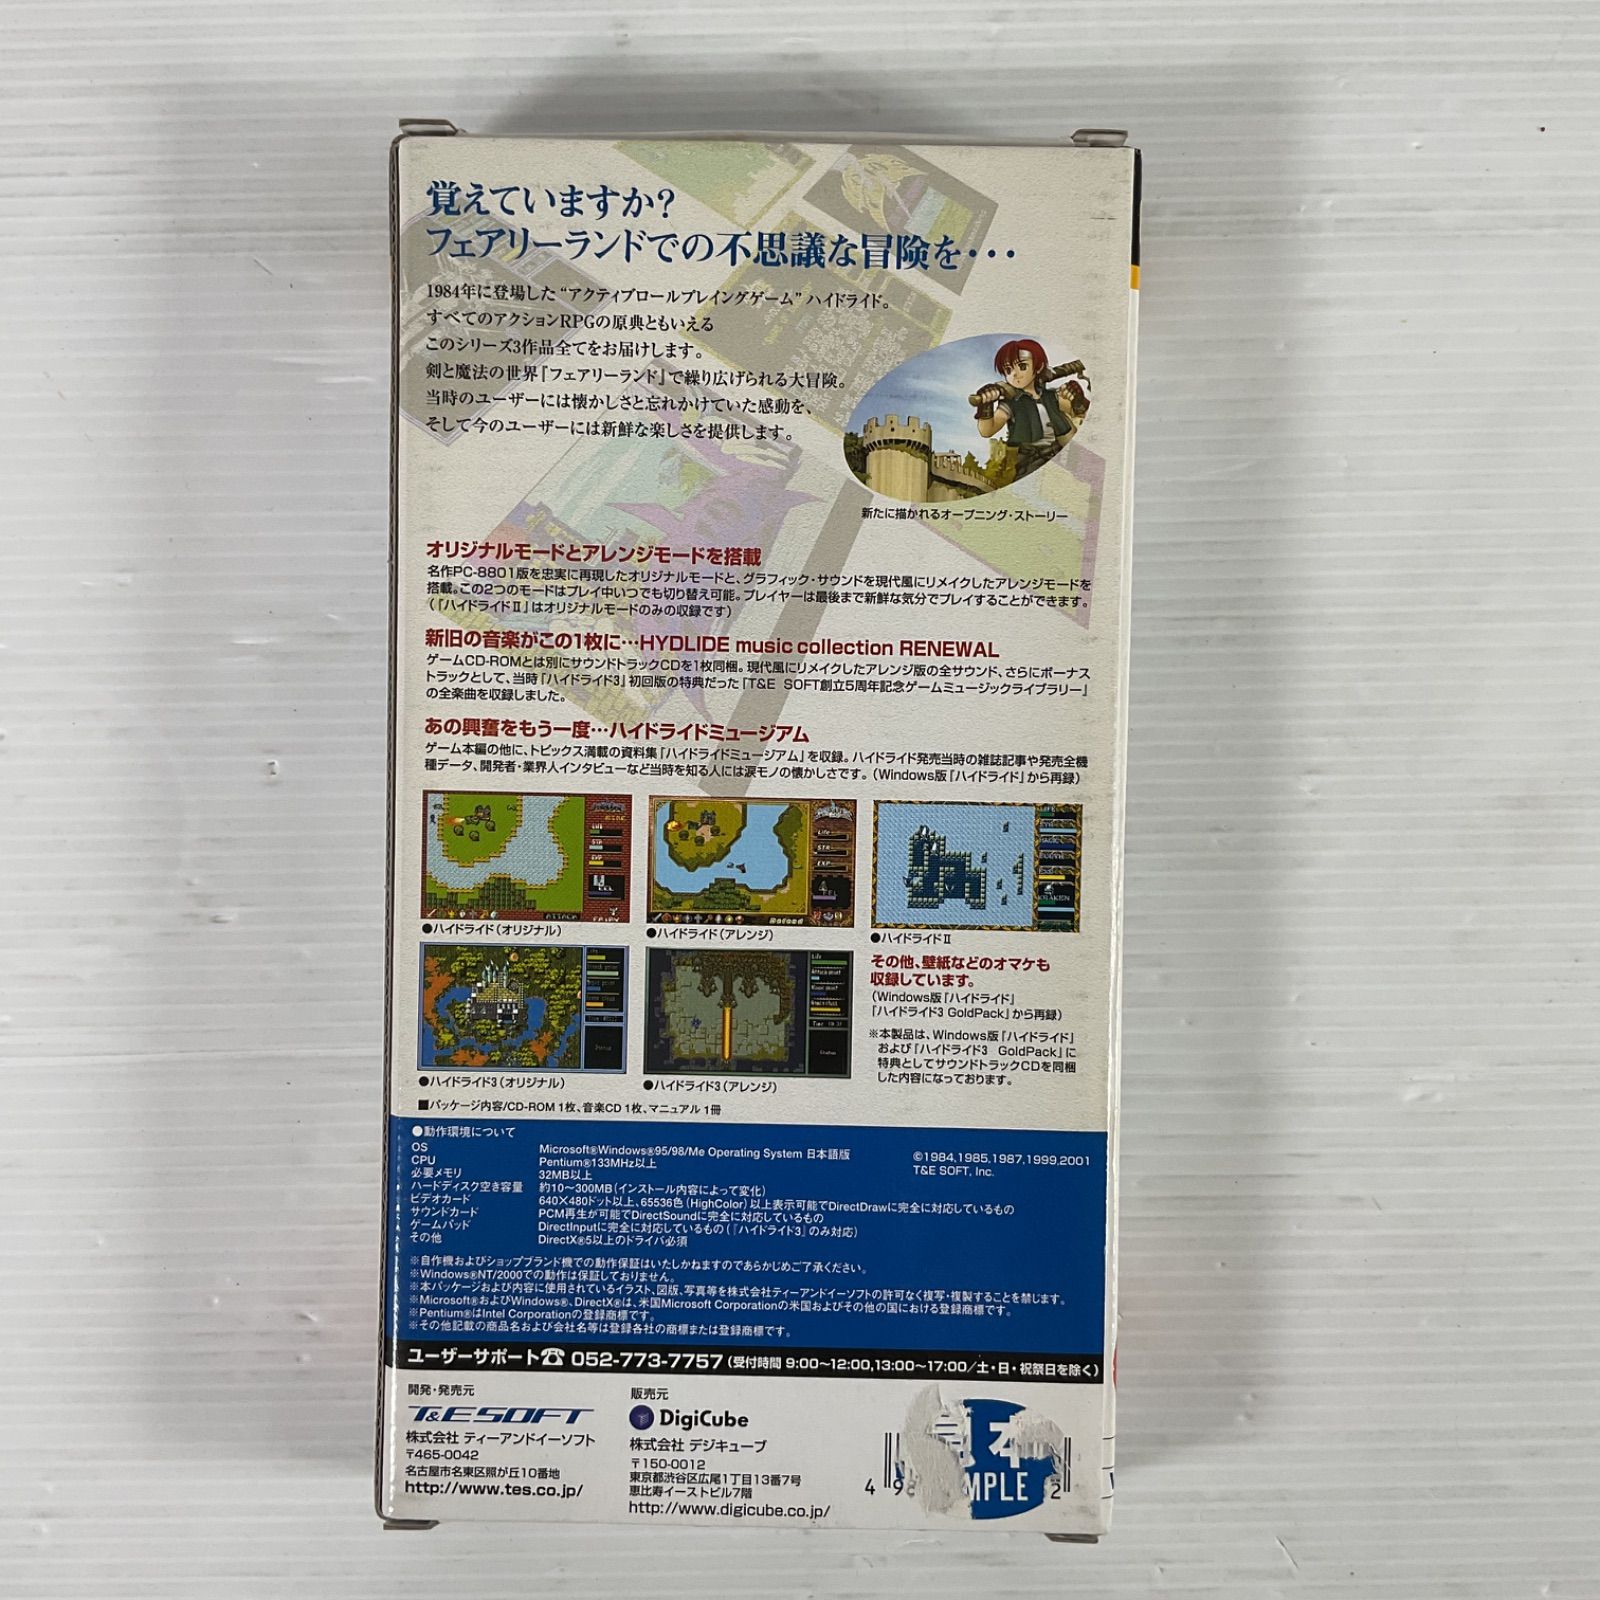 ハイドライド1・2・3 Digicube PC Windows Me/98/95 アクション RPG 